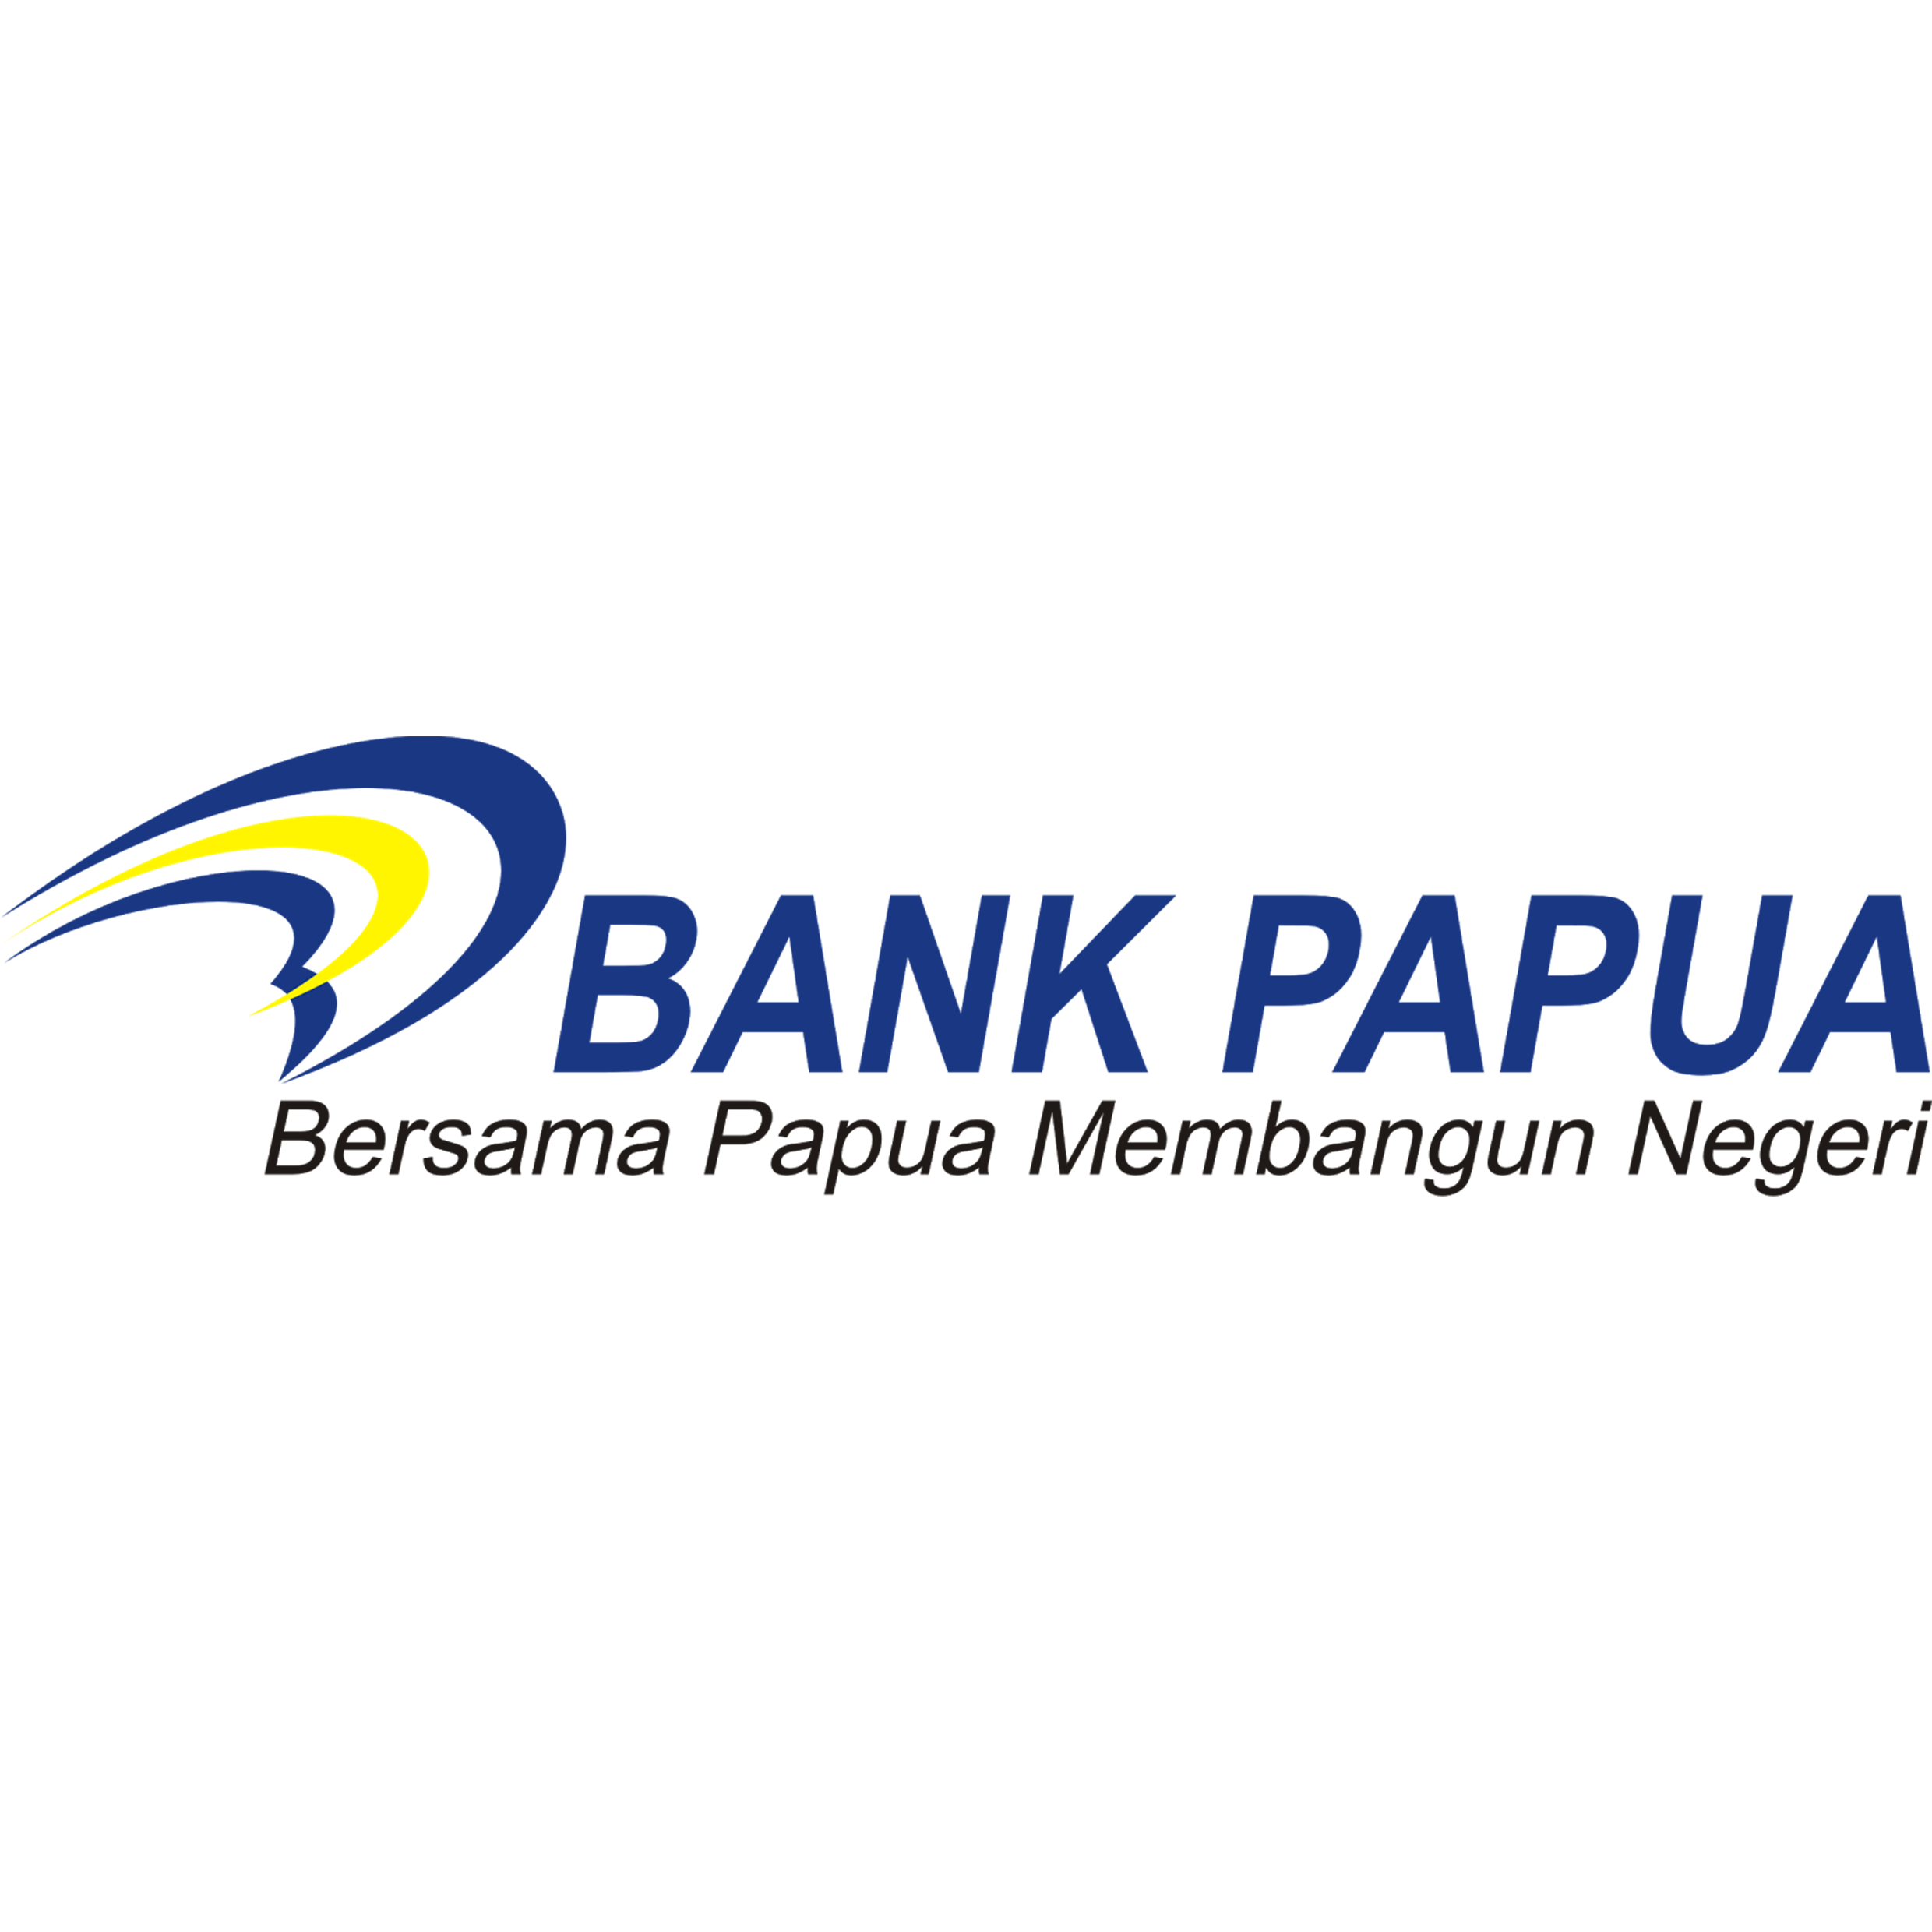 Bank Papua